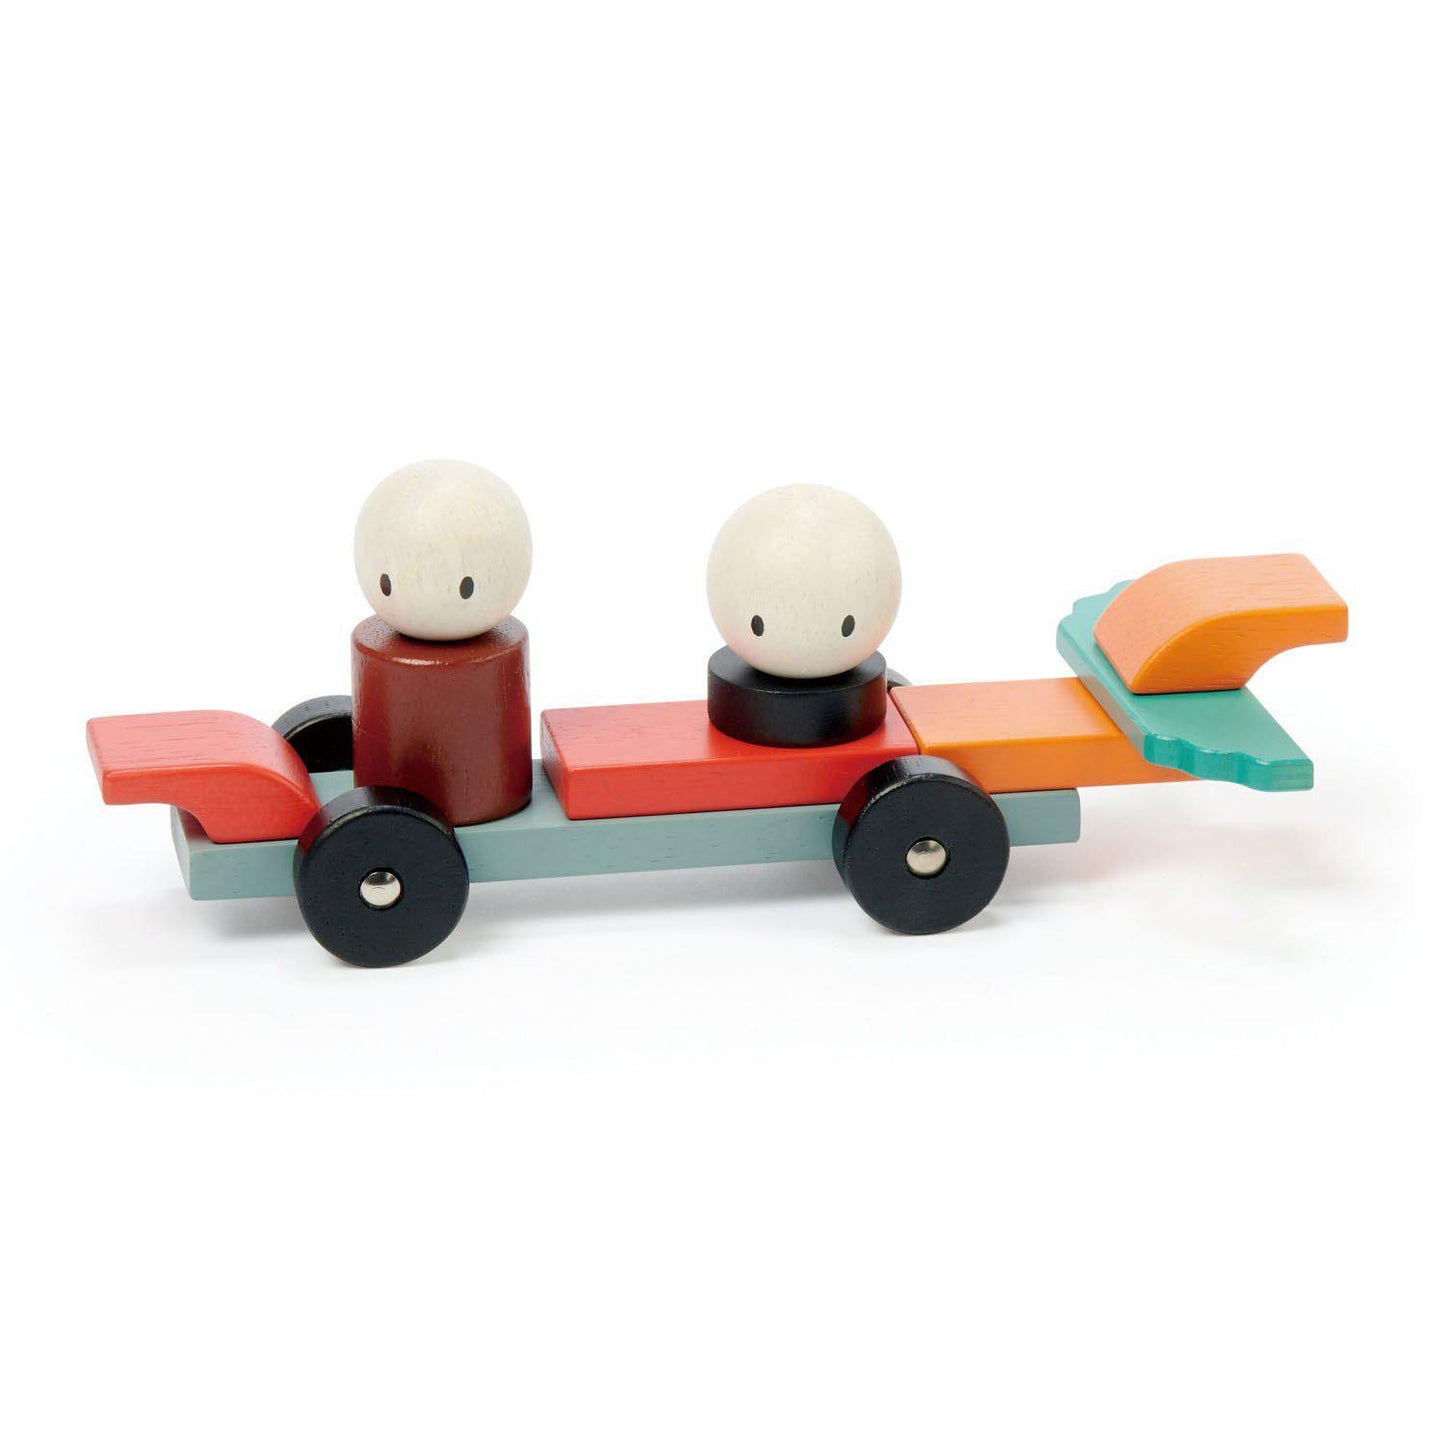 Racing Magblocks mágneses építő játék, prémium minőségű fából - Racing Magblocs - 14 darab -Tender Leaf Toys-Tender Leaf Toys-8-Játszma.ro - A maradandó élmények boltja